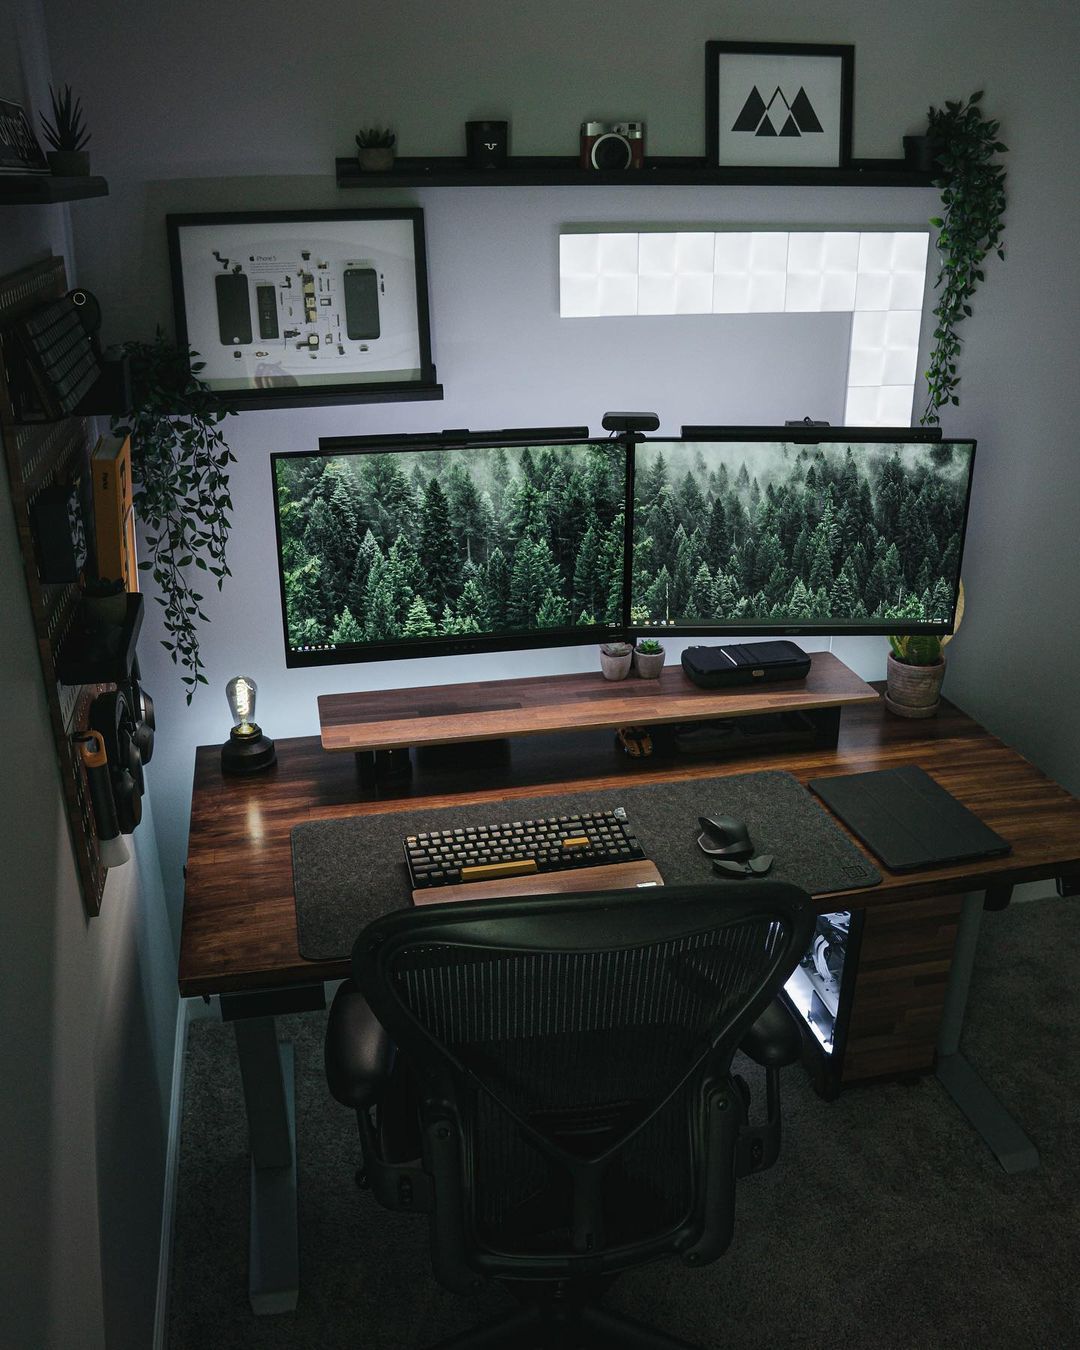 Benefits of computer desk